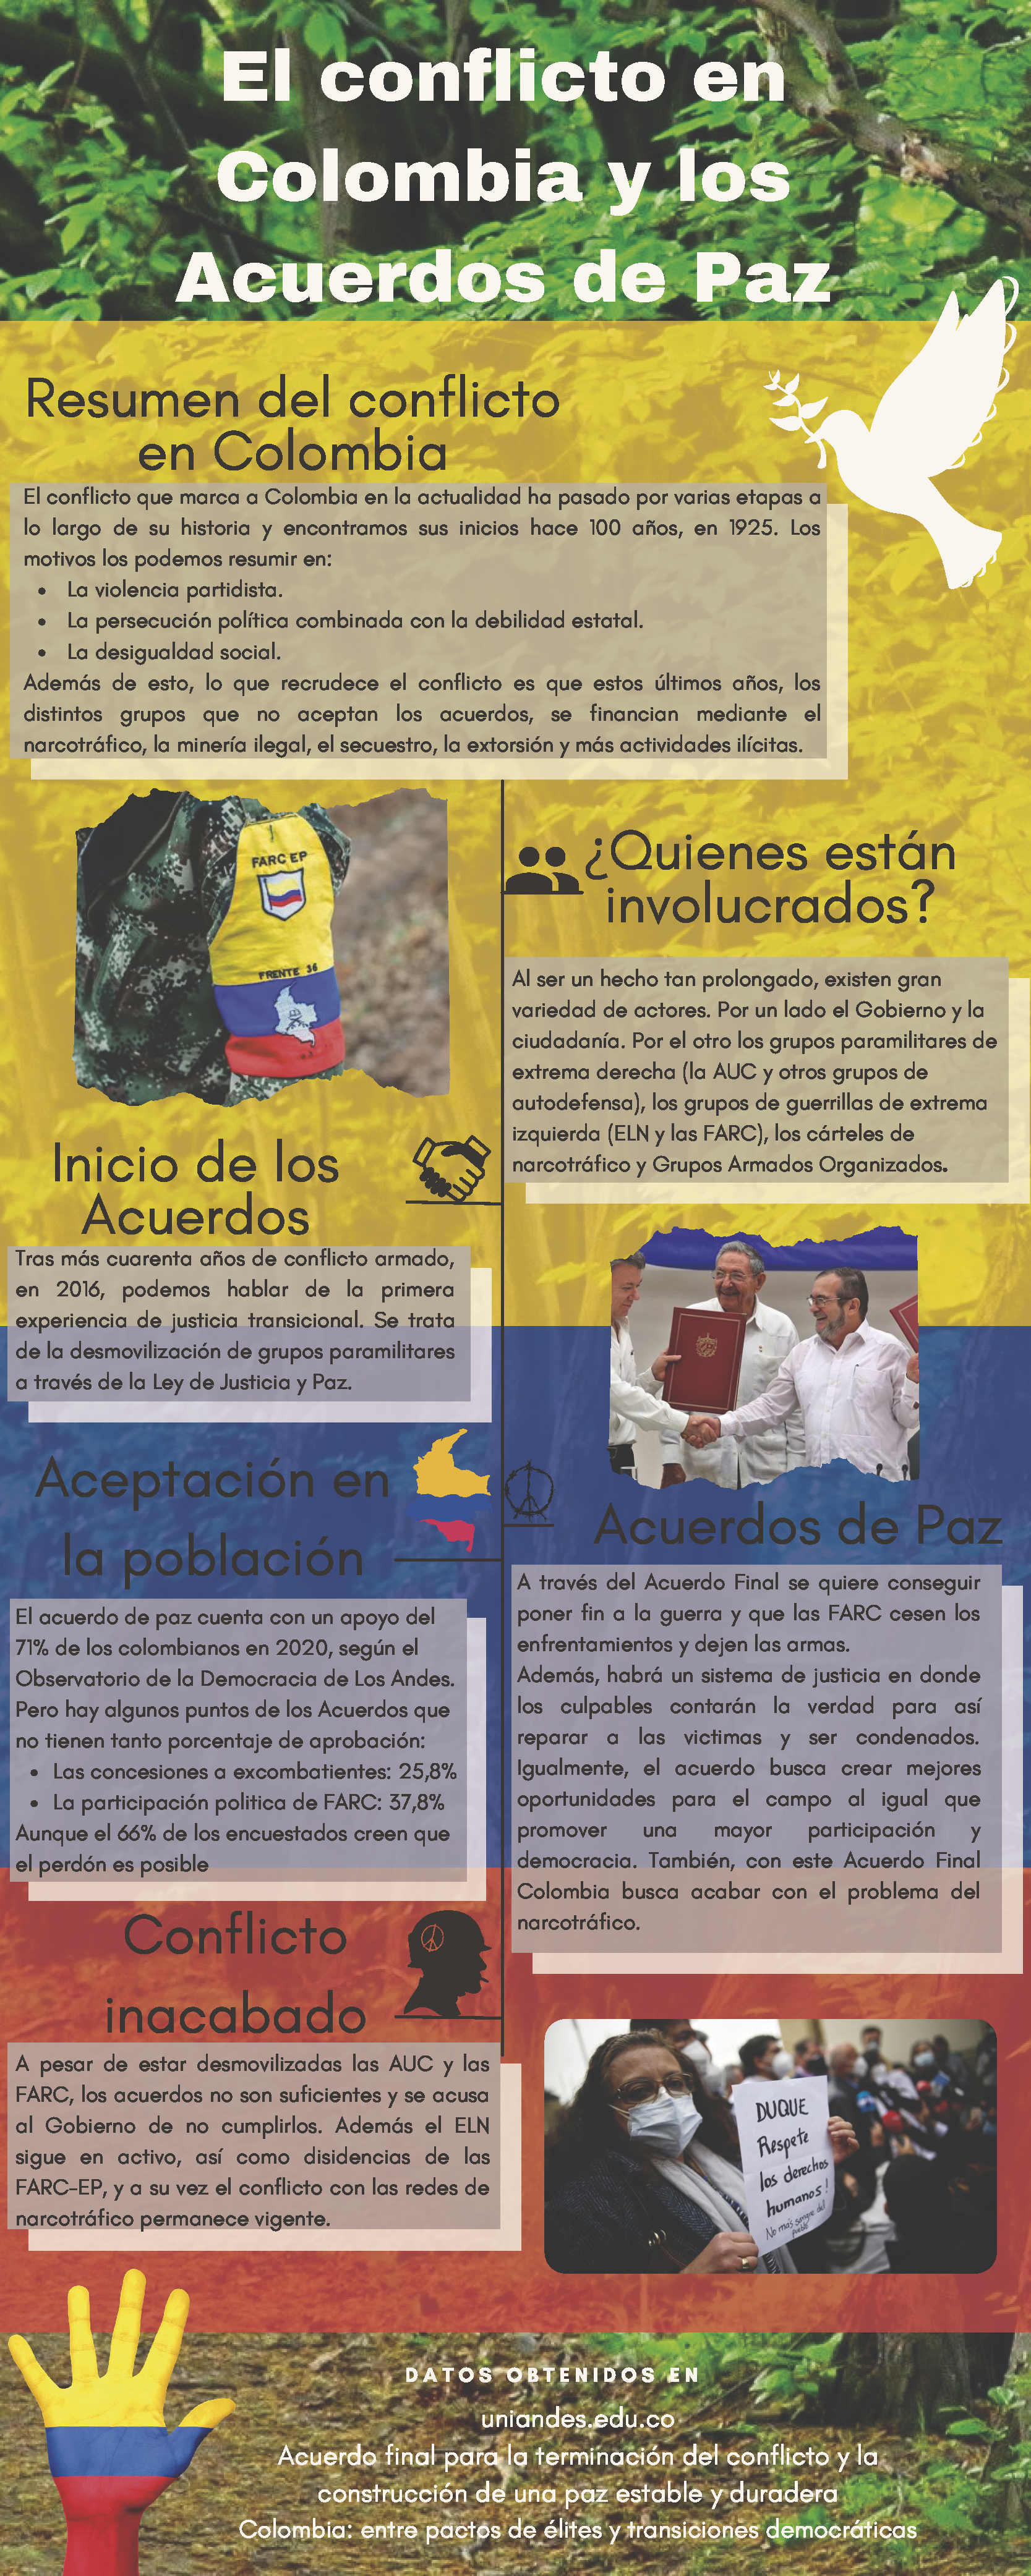 6 el conflicto en colombia y los acuerdos de paz